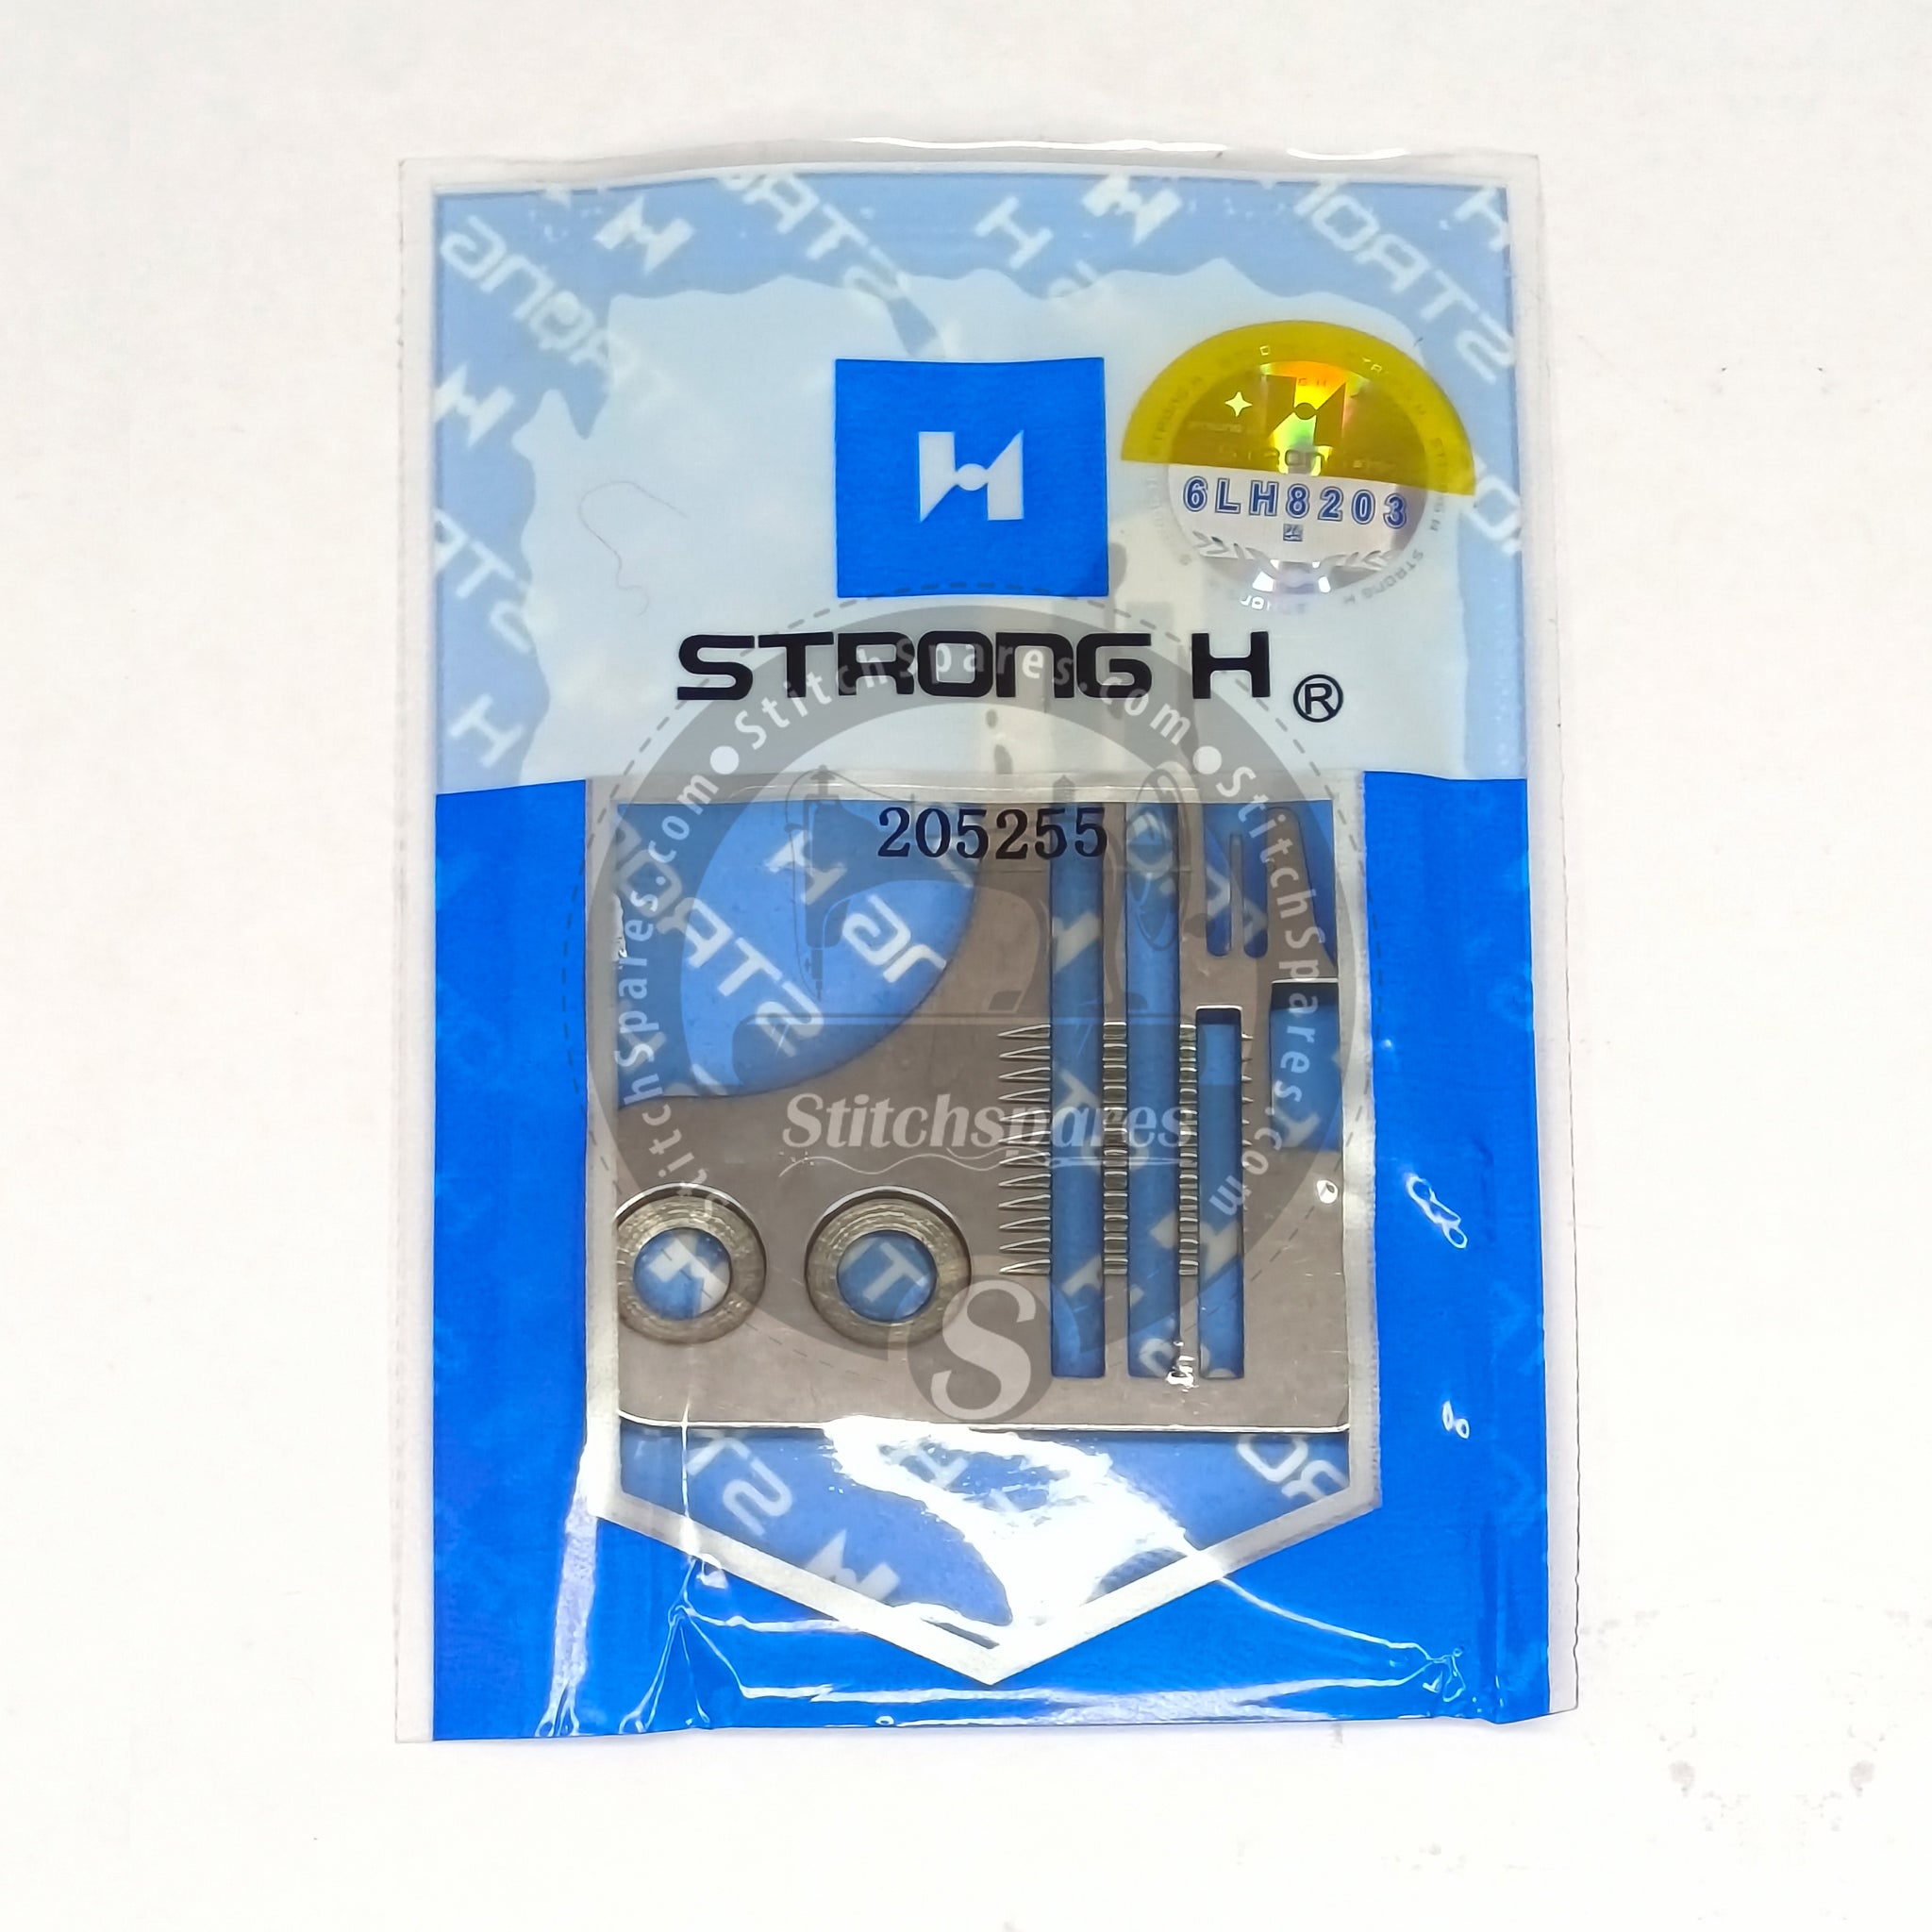 STRONG-H 205255 नीडल प्लेट पेगासस L52-13 (2×3) सिलाई मशीन स्पेयर पार्ट